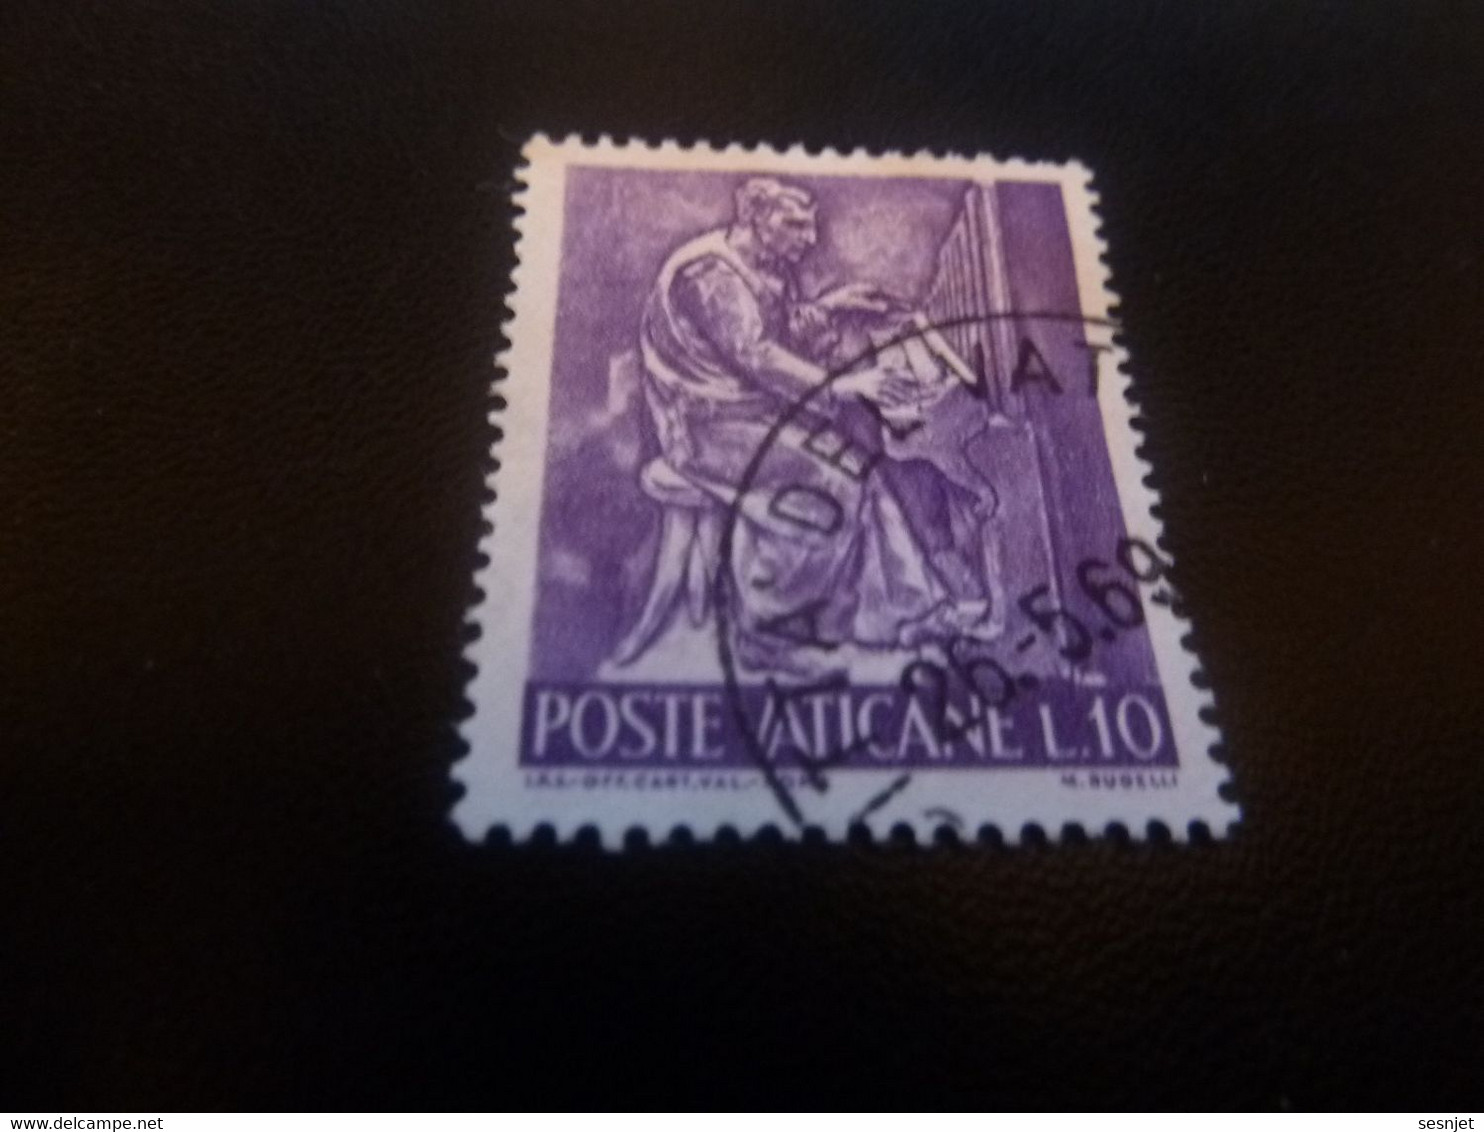 Poste Vaticane - J.P.S Off Cart Val Roma - M. Rudelli - Val L.10 - Lilas Foncé - Oblitéré - Année 1969 - - Gebraucht